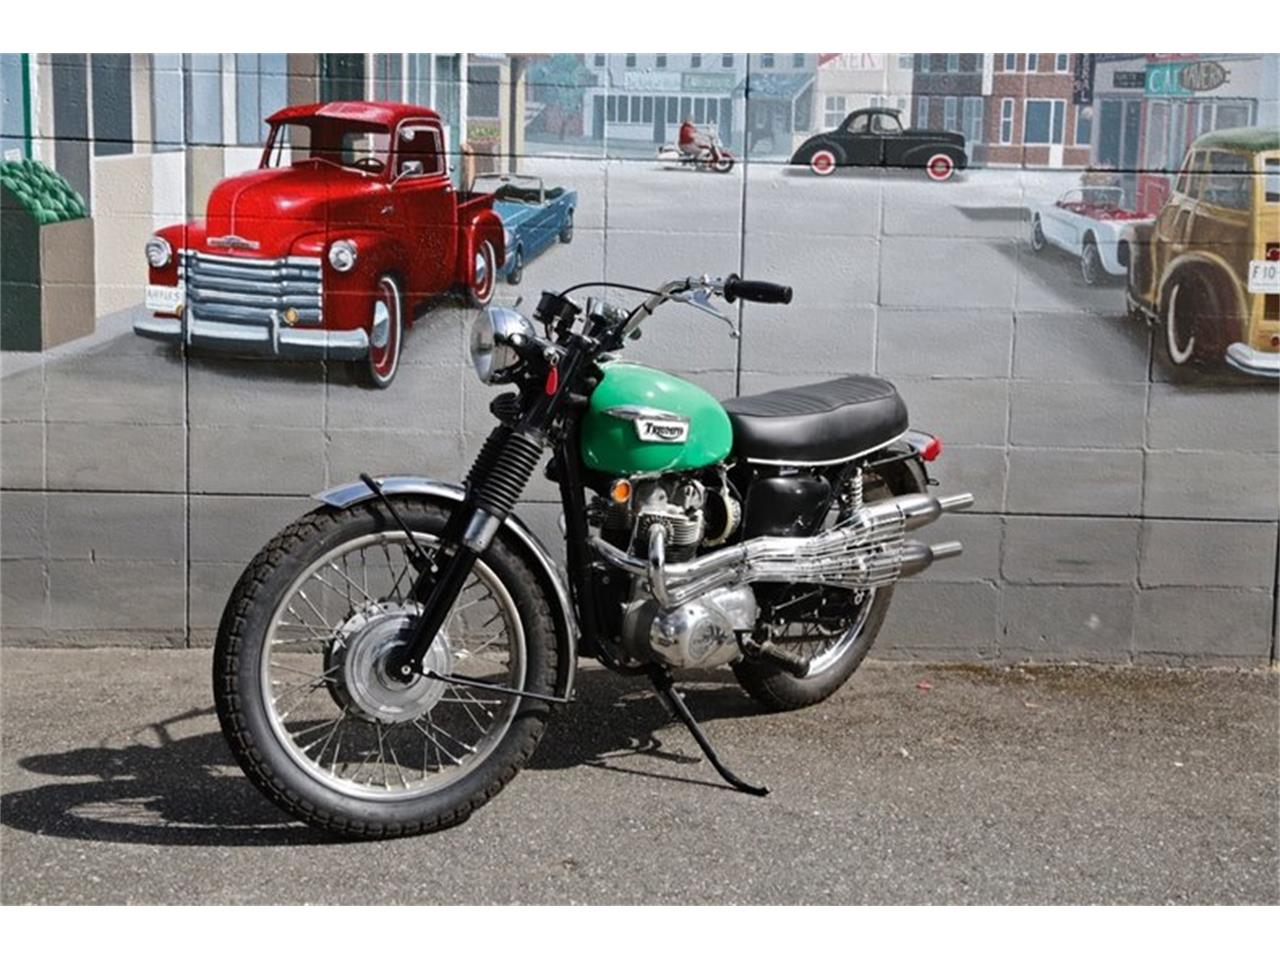 1969 Triumph Motorcycle for Sale | ClassicCars.com | CC-1106464